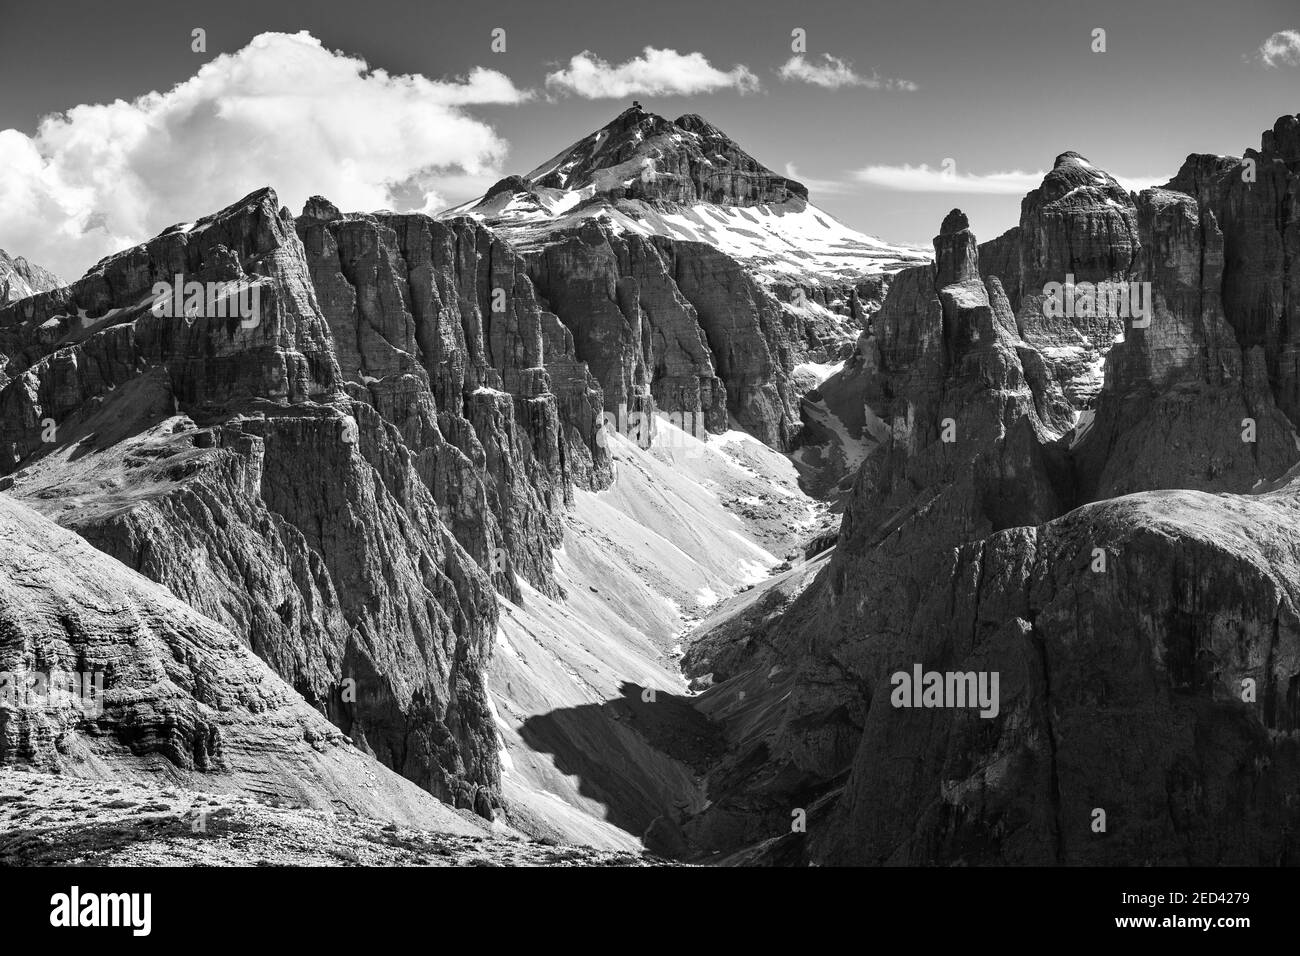 View on the Sella mountain group, Val Mezdì rock valley an Piz Boè peak. The Gardena Dolomites. Italian Alps. Europe. Black white. Stock Photo